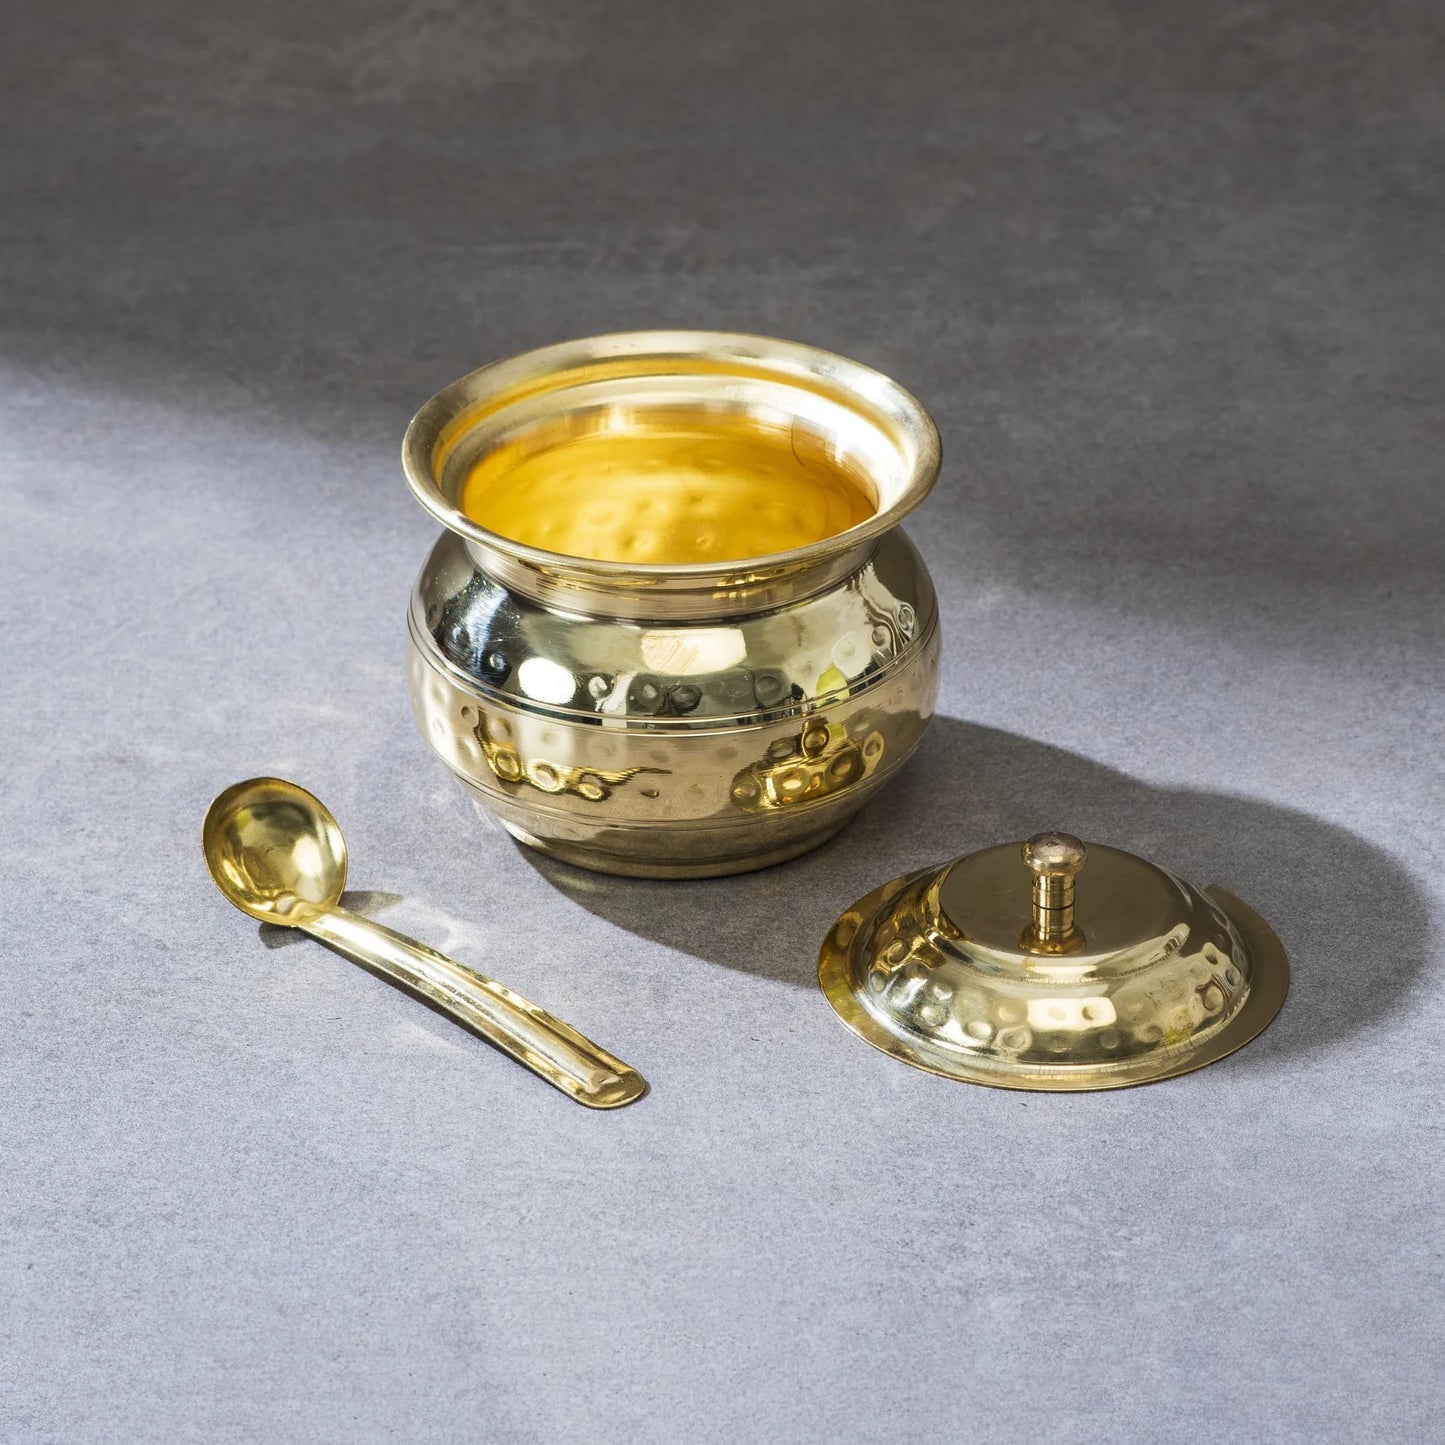 Kitchen Essentials Set (Masala Box + Ghee Pot + Paraat) | Brass Cookware